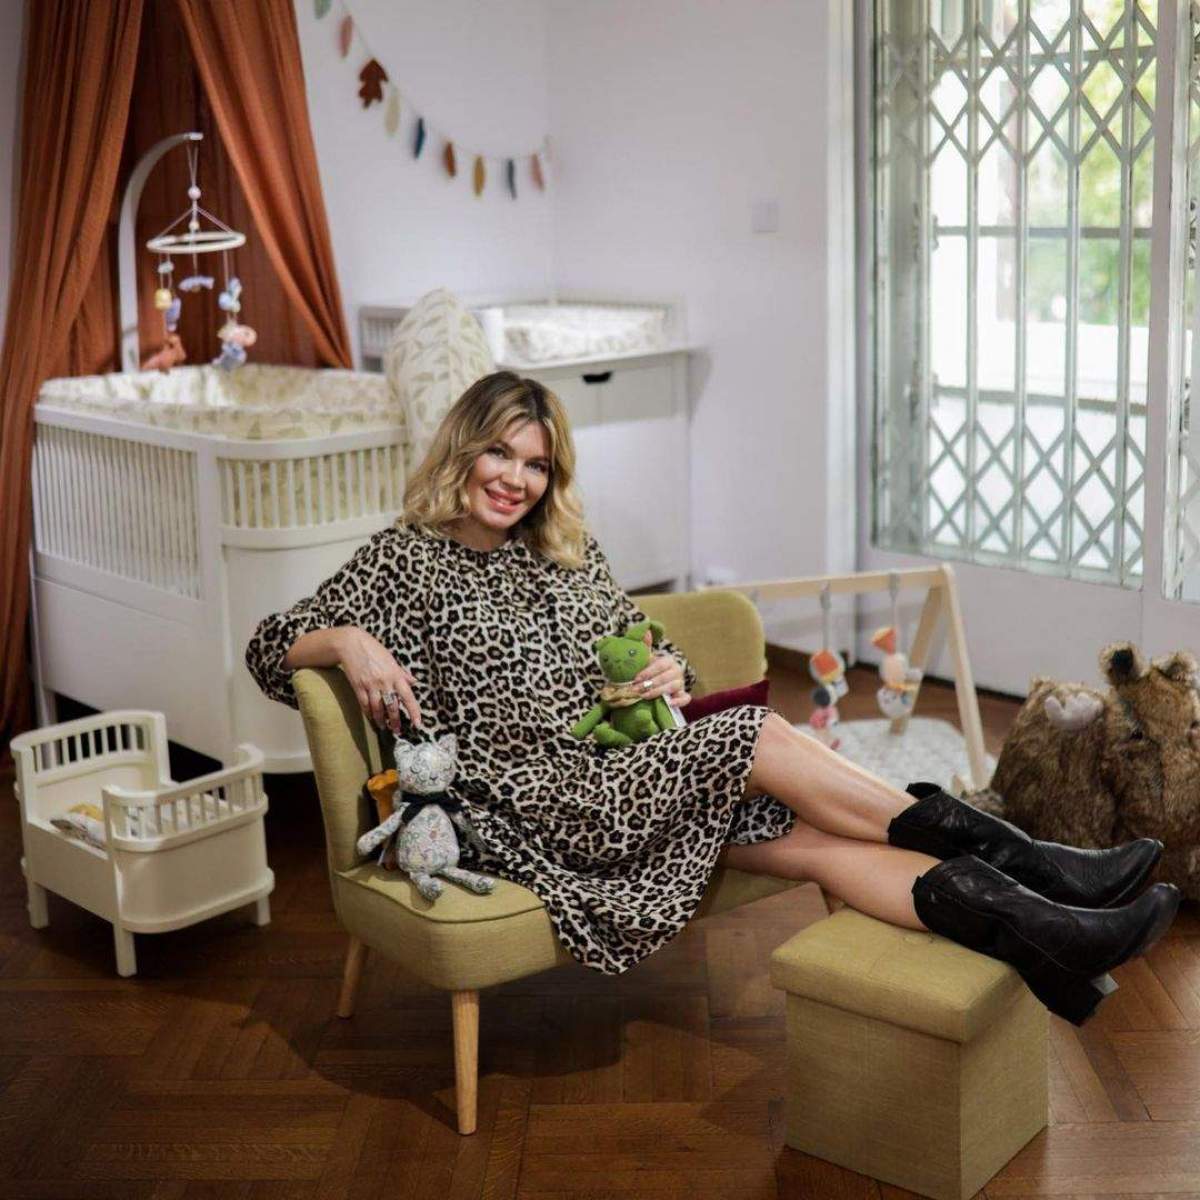 Gina Pistol, așezată pe fotoliu, lângă pătuțul copilului